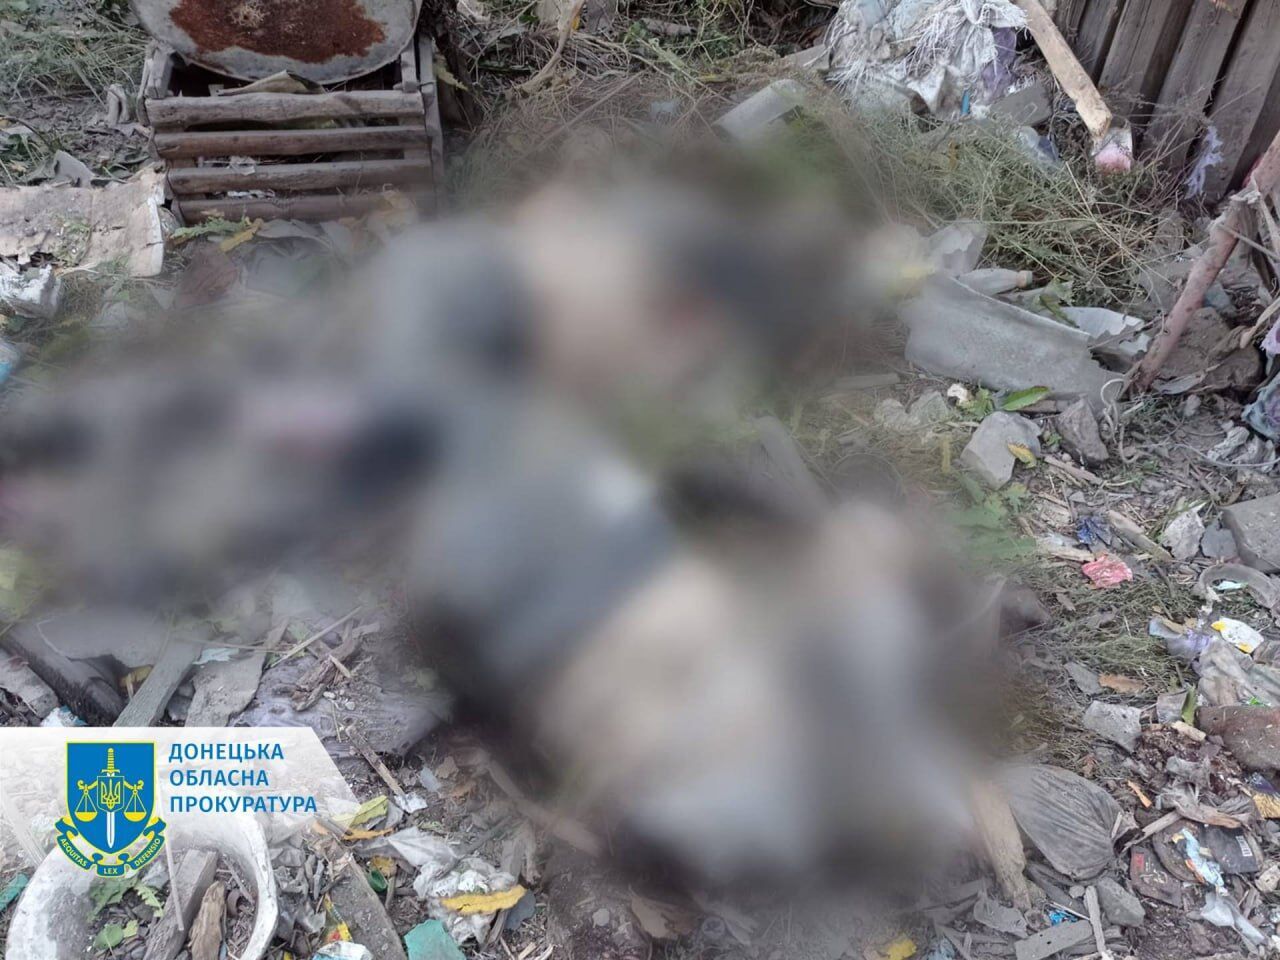 В Торецке войска России из самоходного миномета "Тюльпан" убили четырех человек. Фото